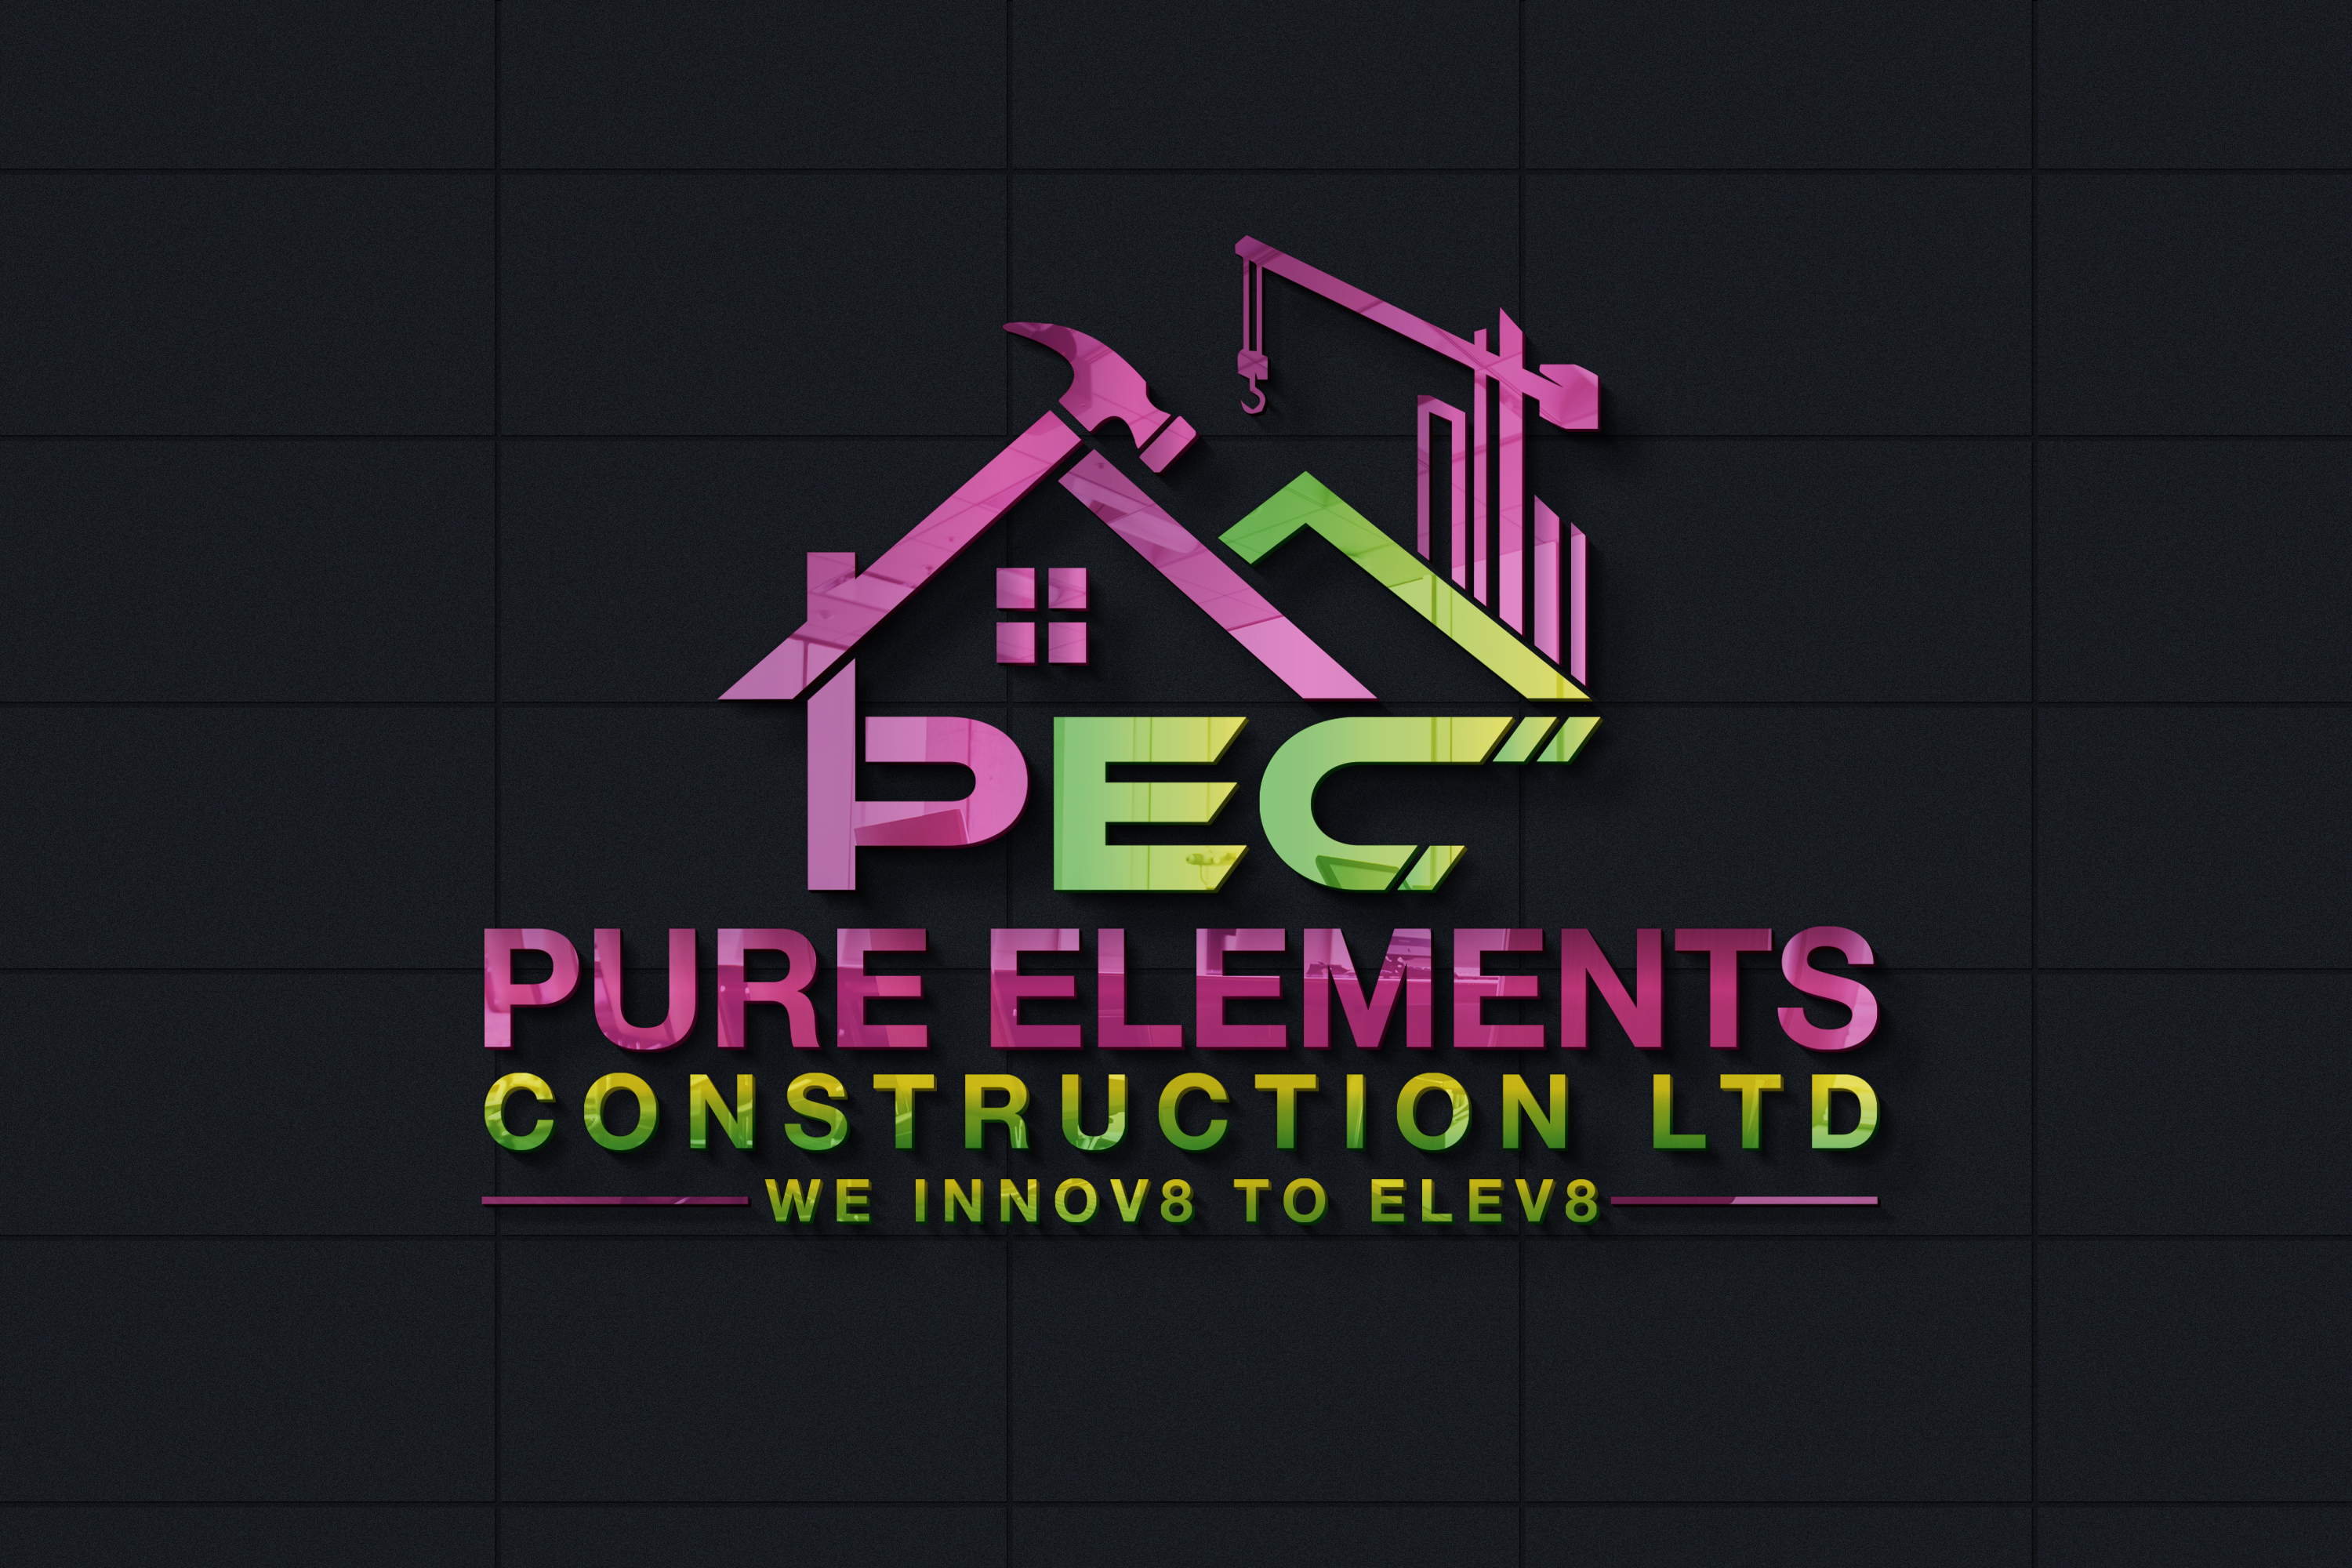 Pure Elements Construction Ltd